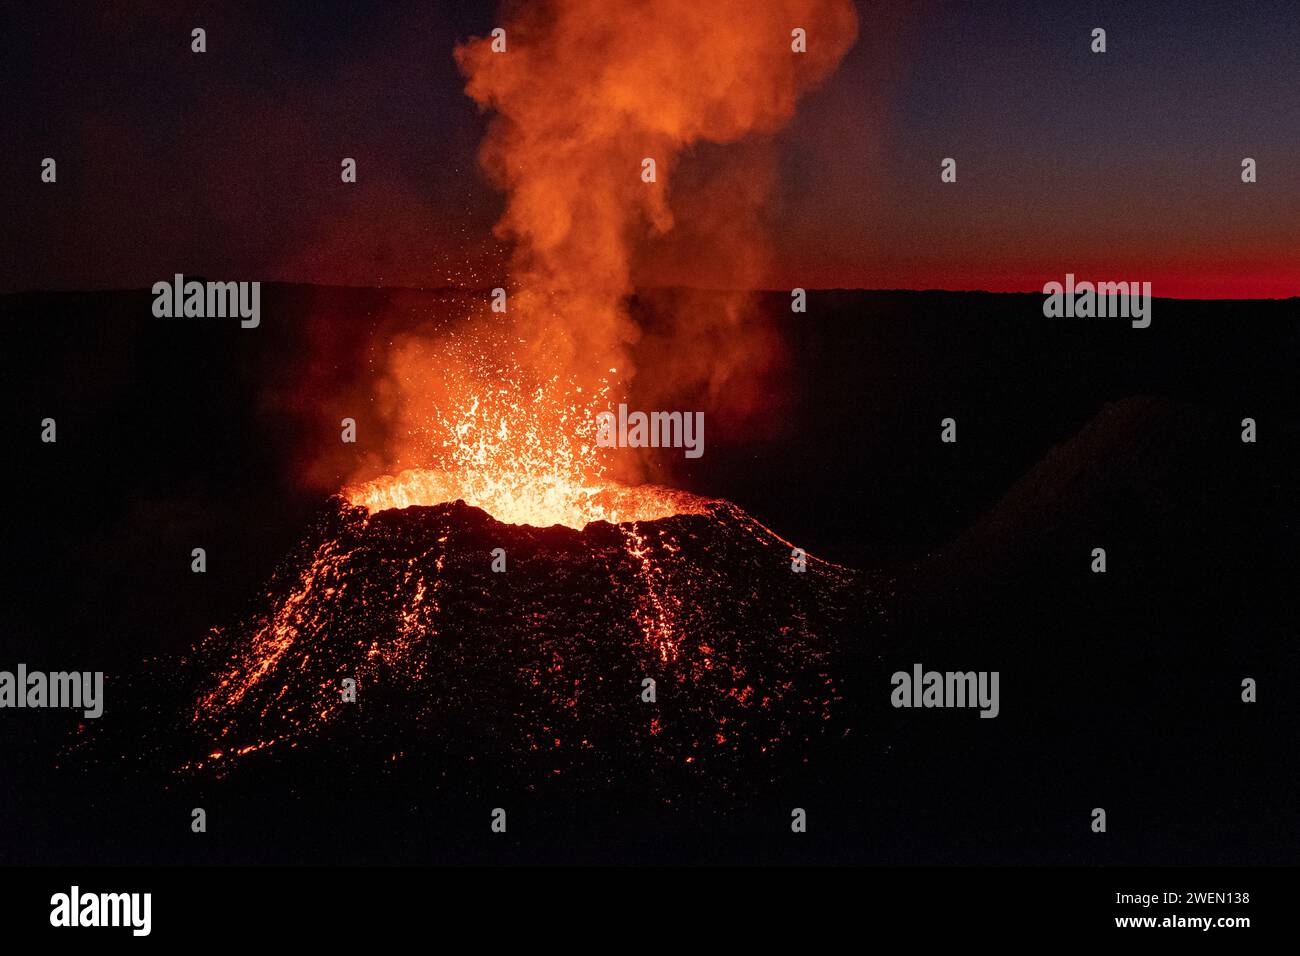 Il vulcano Piton de la Fournaise erutta sull'isola di Reunion, sparando ruscelli di lava fusa in alto nell'aria sotto la copertura dell'oscurità. Foto Stock